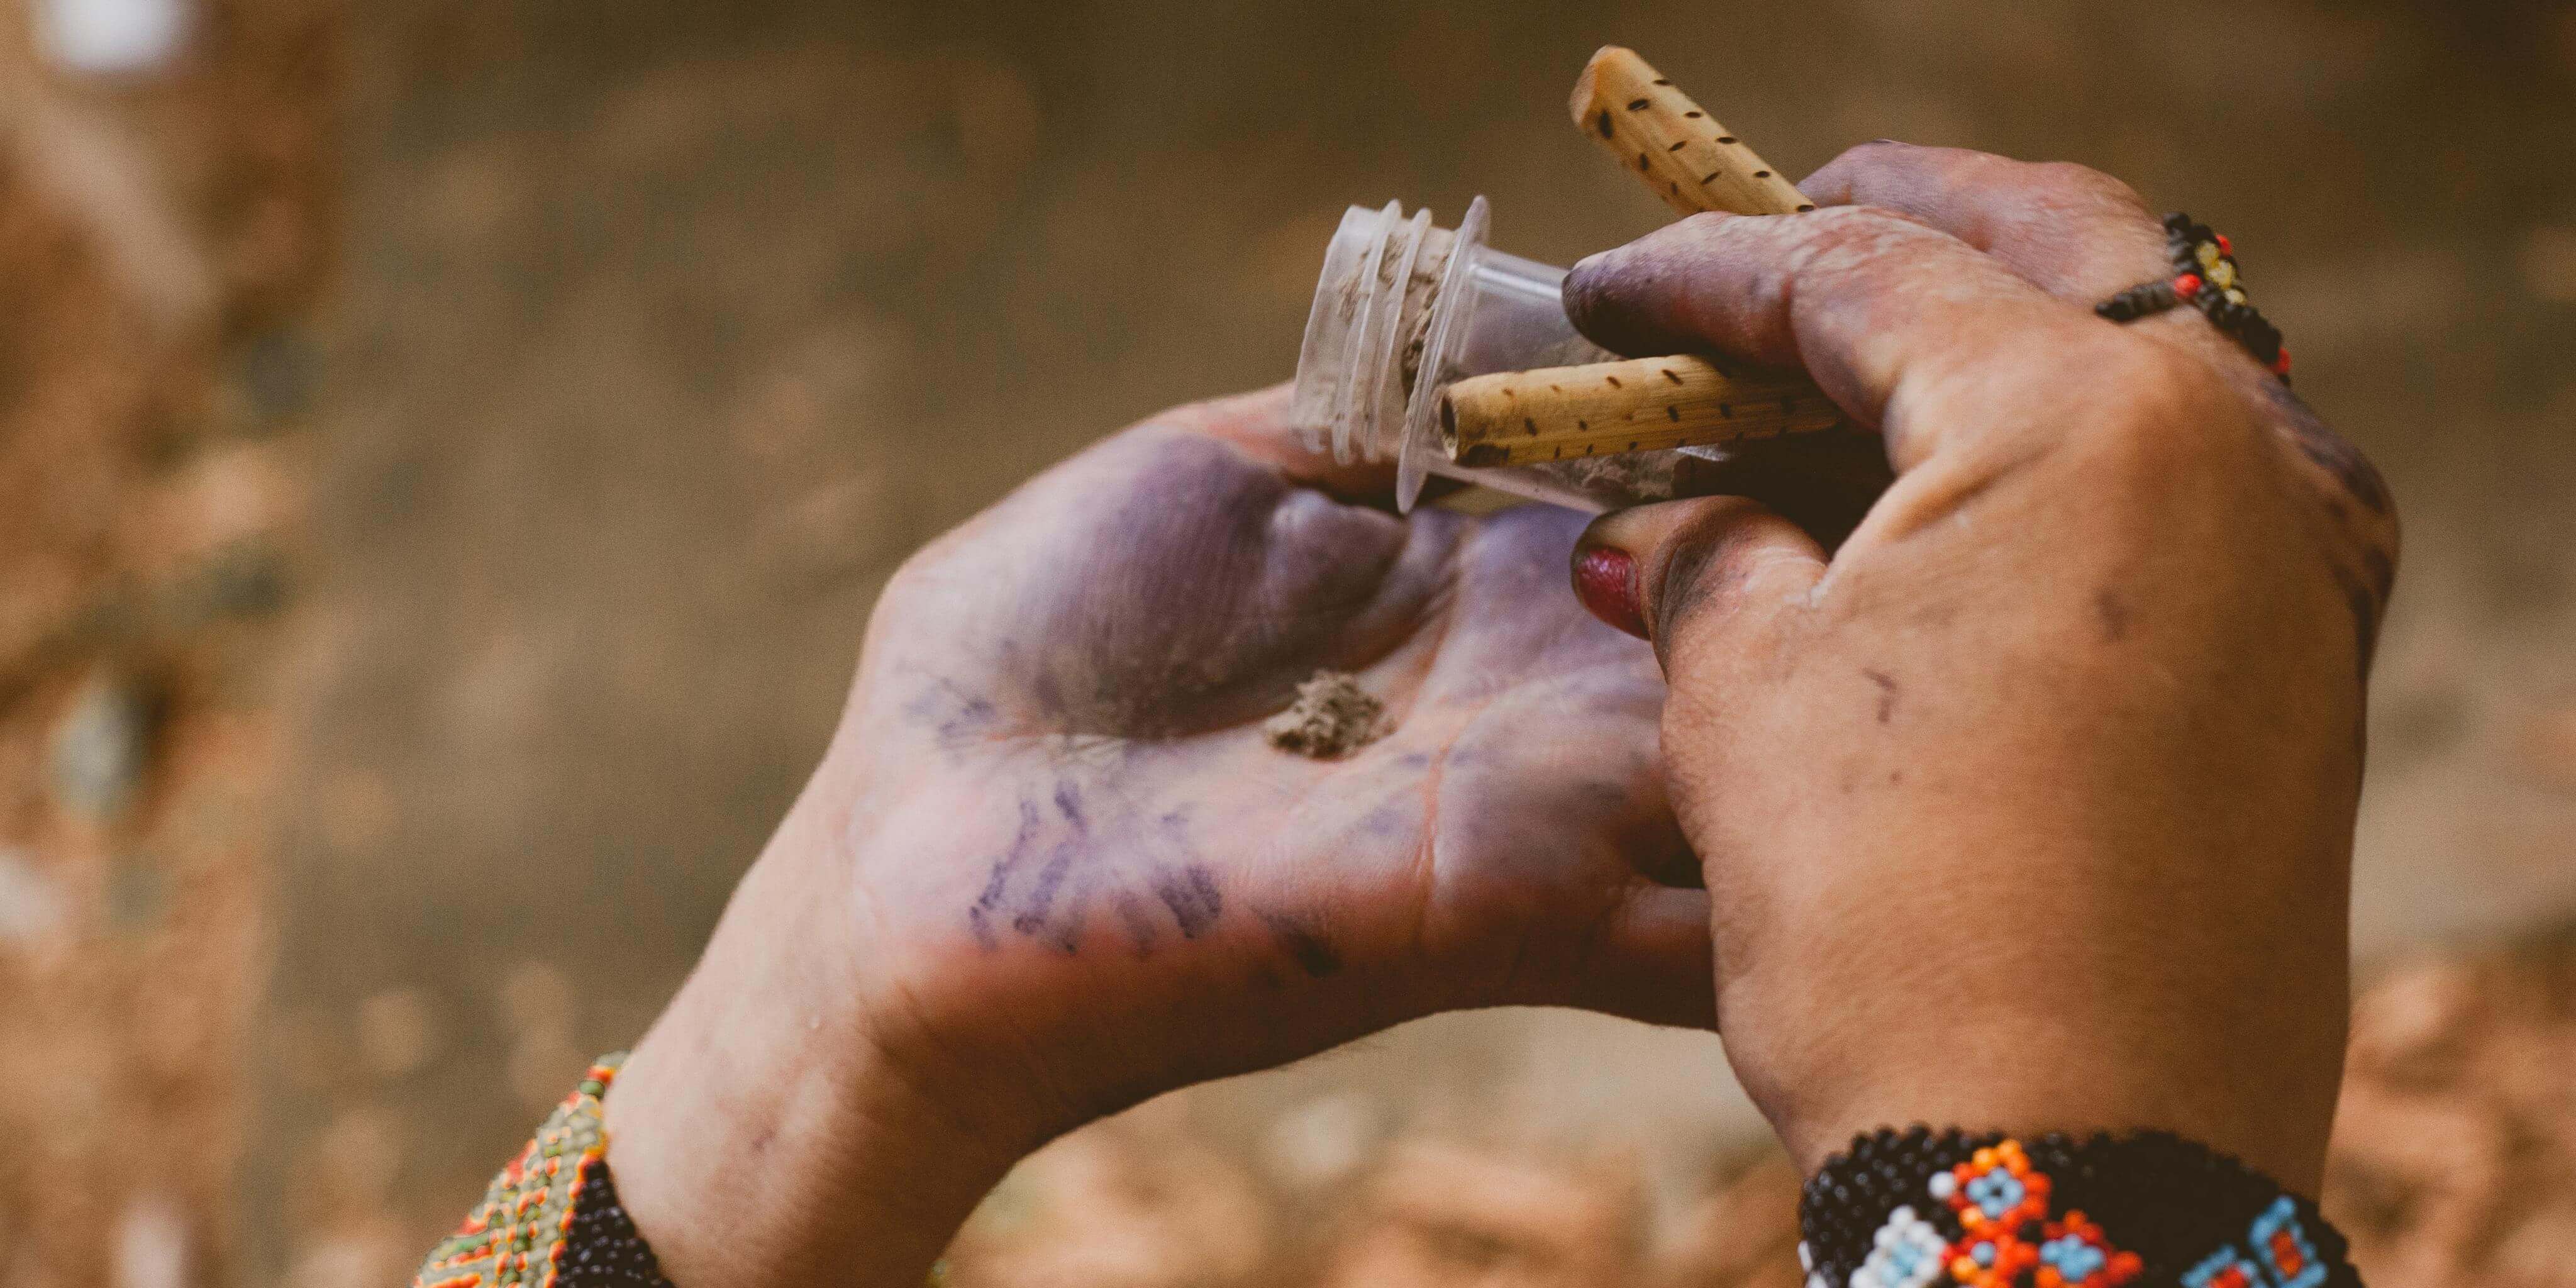 Pueblos indígenas se aíslan y acuden a la medicina ancestral ante la pandemia